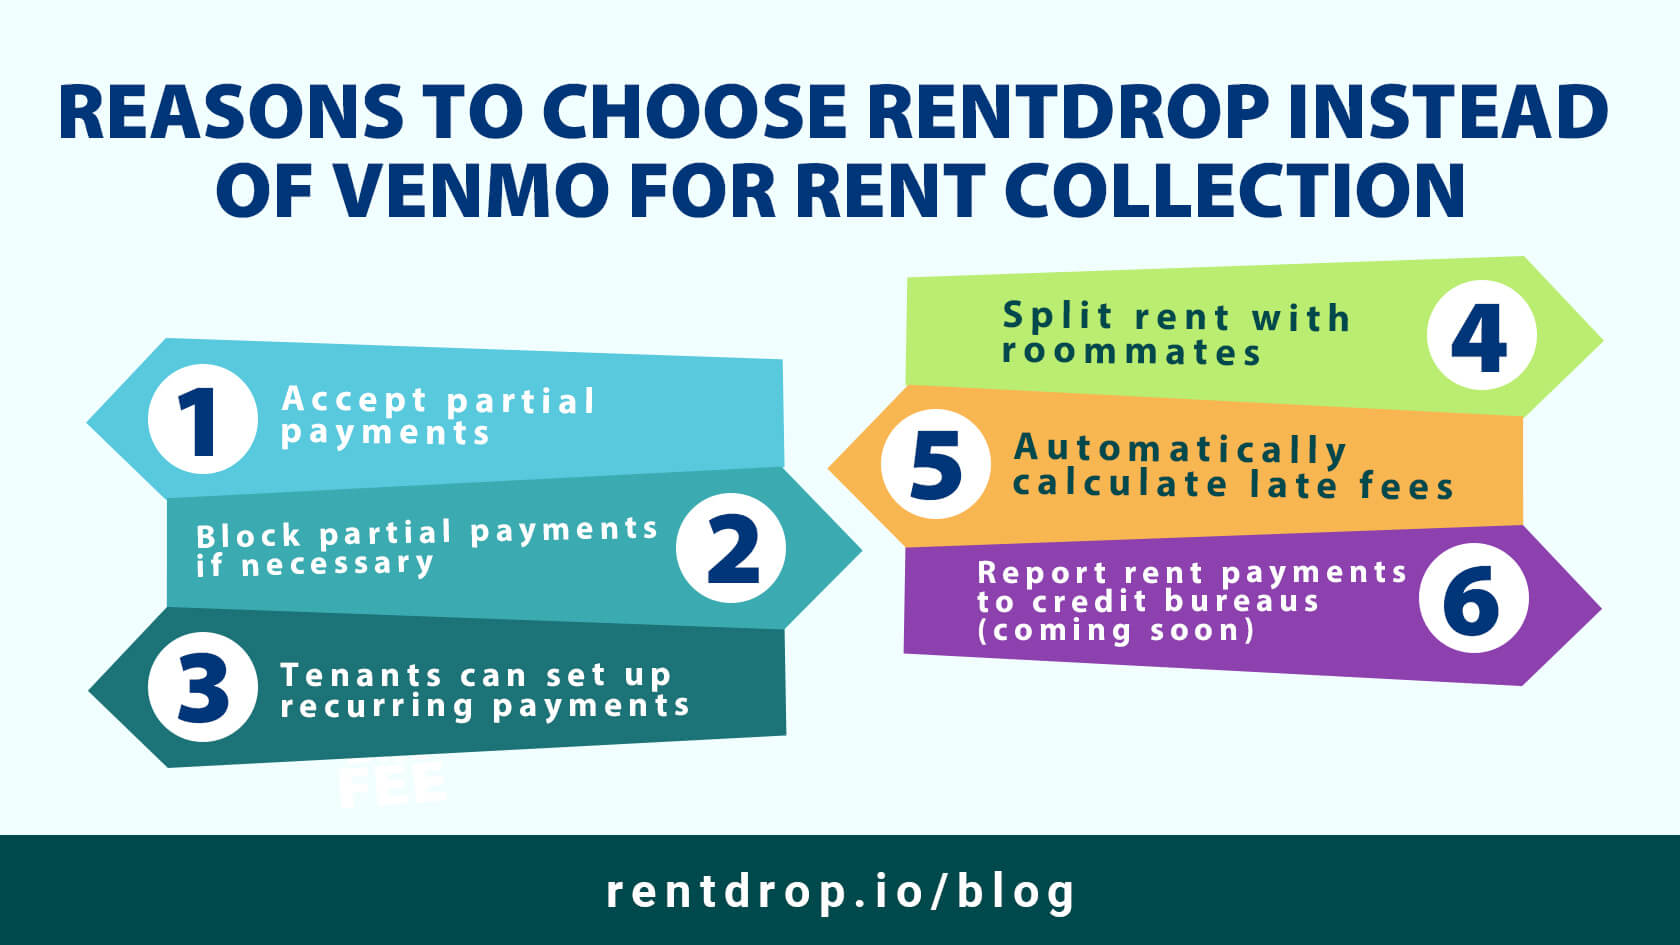 Schedule My Rent Payment asset rentdrop